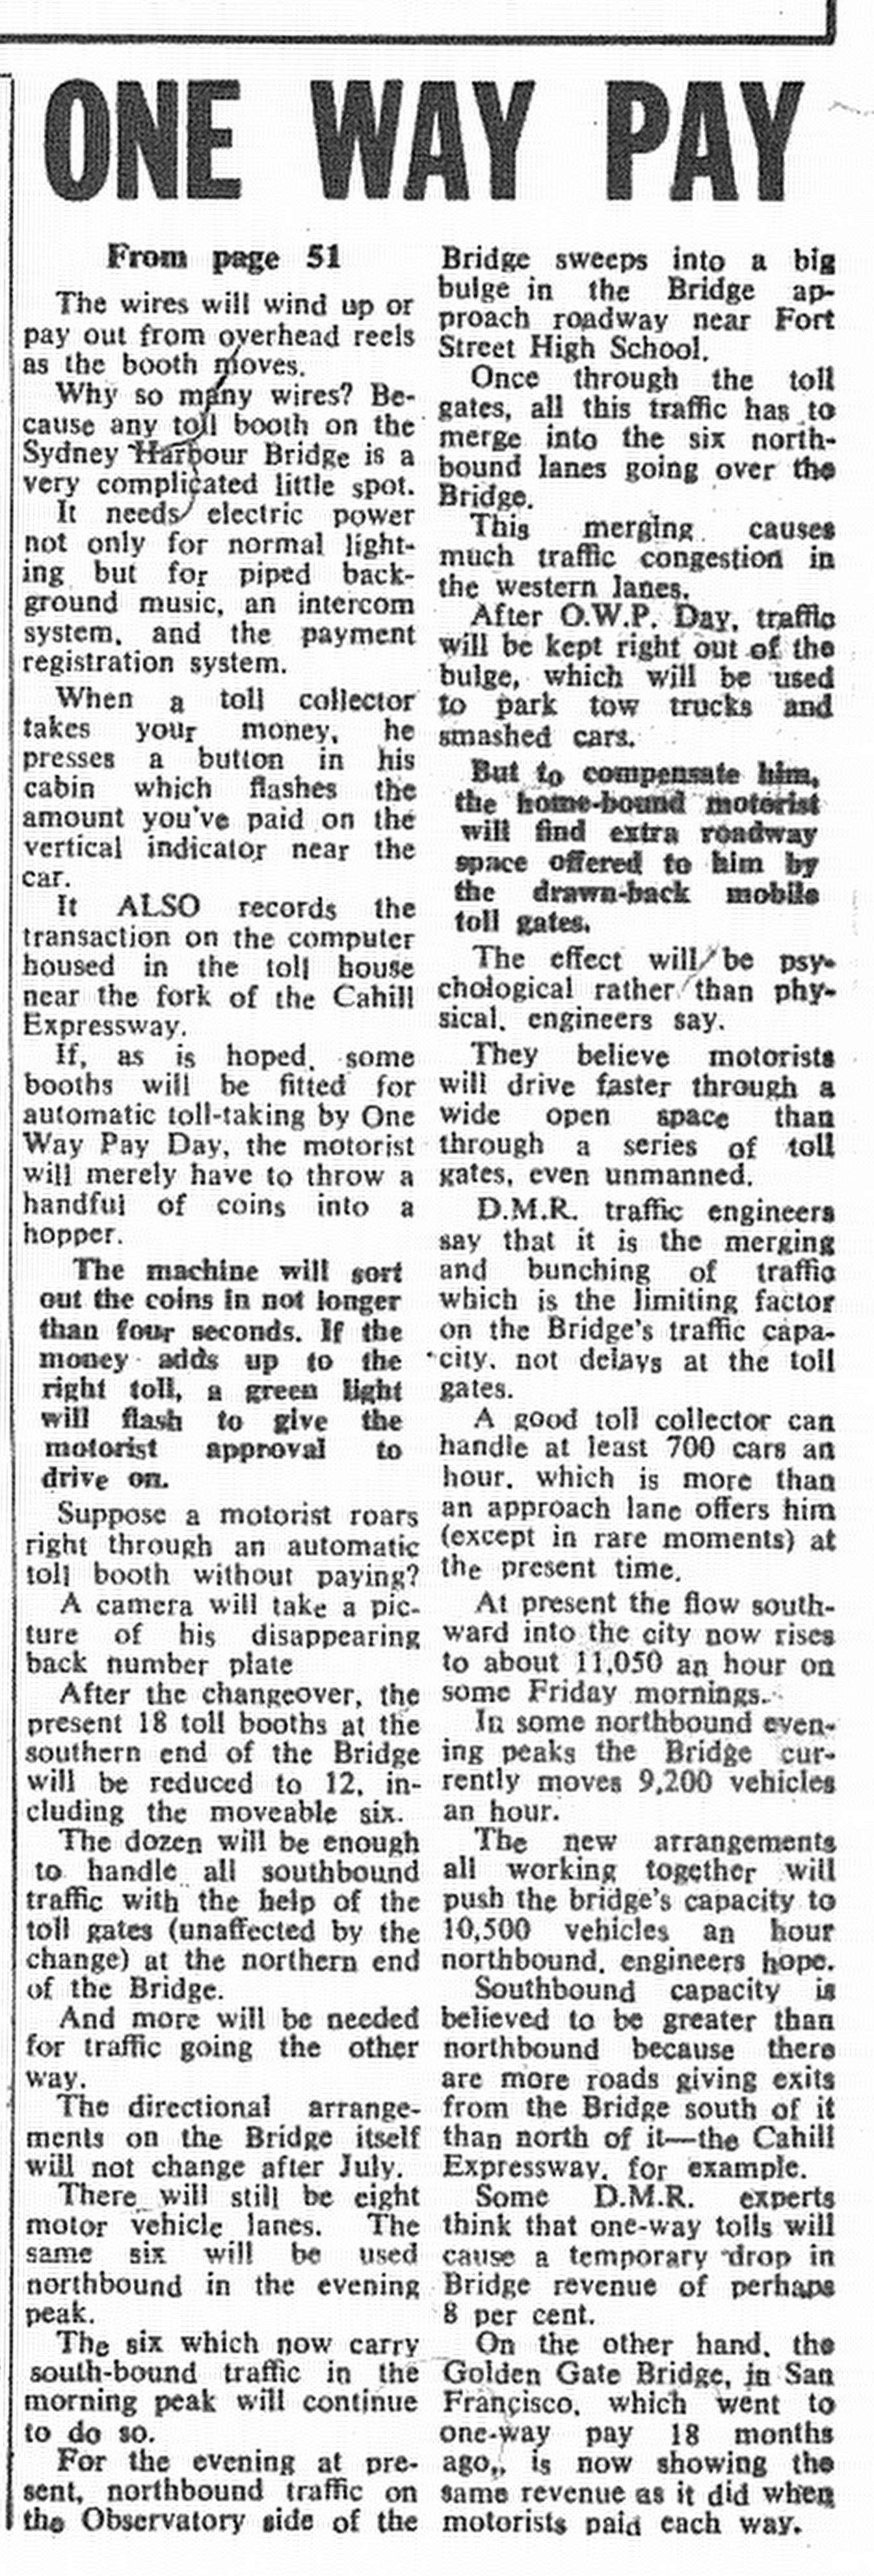 Sydney Harbour Bridge Tollgates June 7 1970 Sun Herald 84